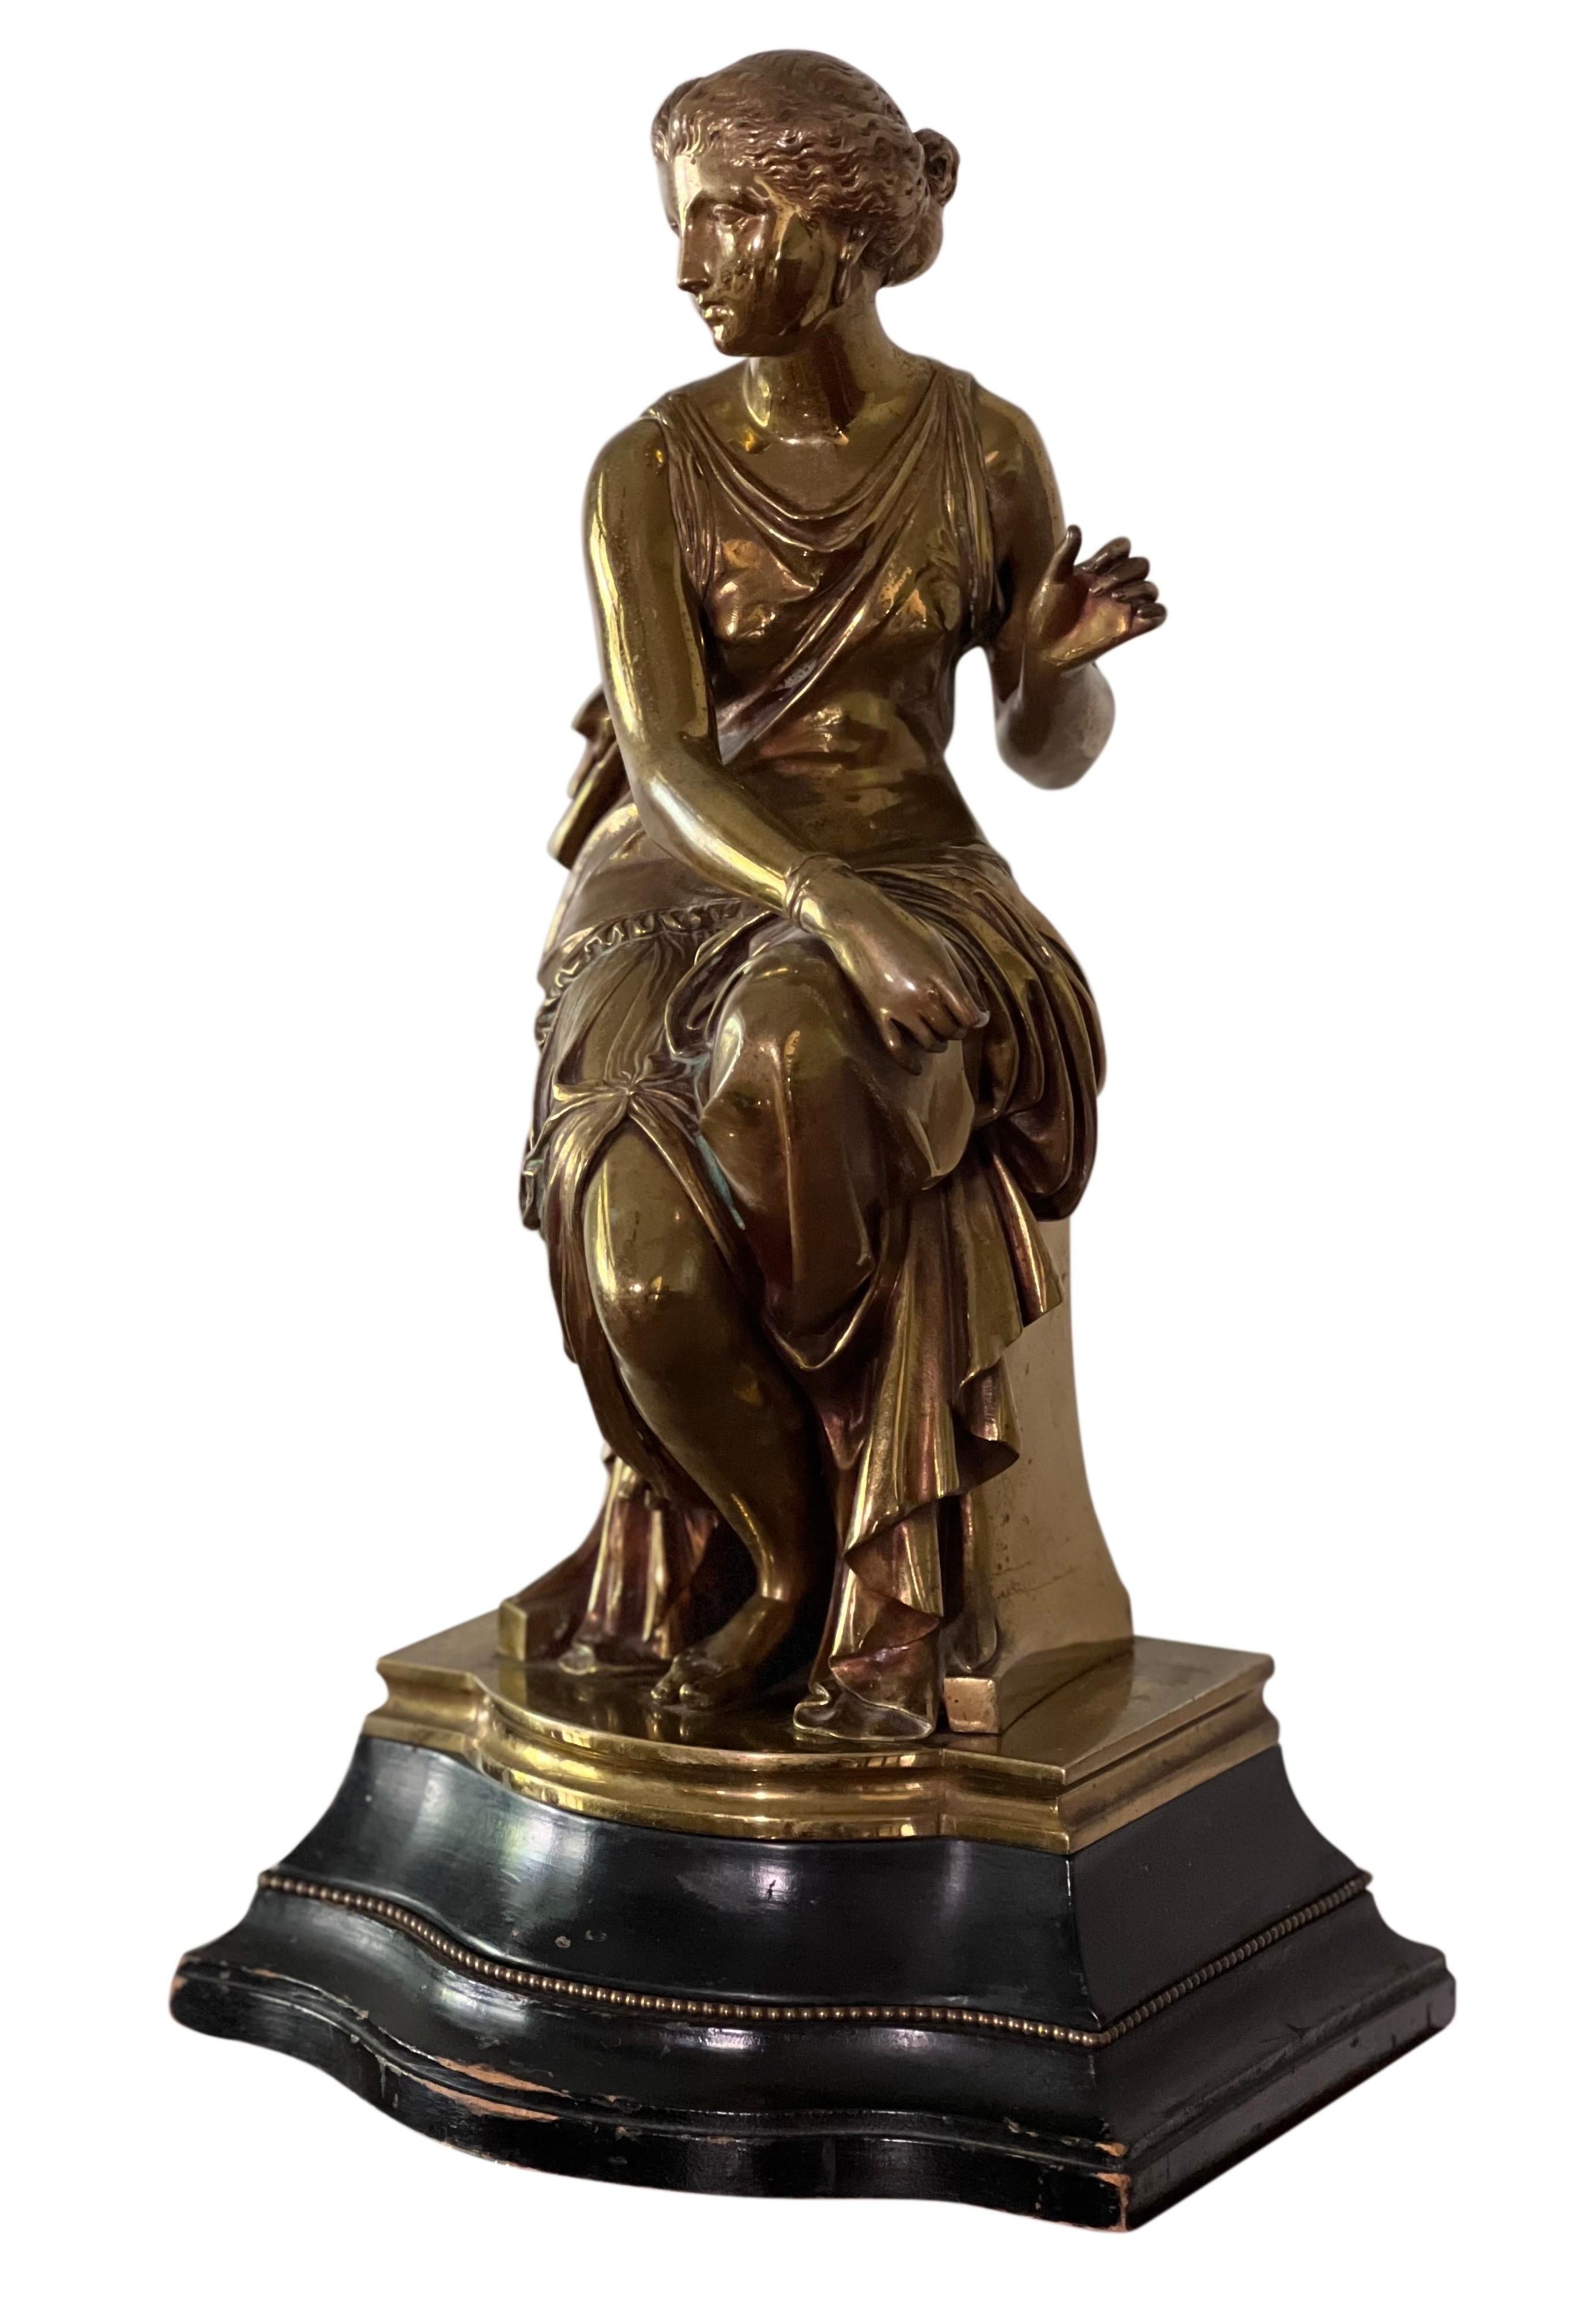 Magnifique sculpture en bronze patiné d'Auguste Joseph Peiffer, 19ème siècle, signée.

La pièce représente une jeune fille assise, drapée dans une tenue grecque classique. Il est monté sur une élégante base en bois incurvée, rehaussée d'une